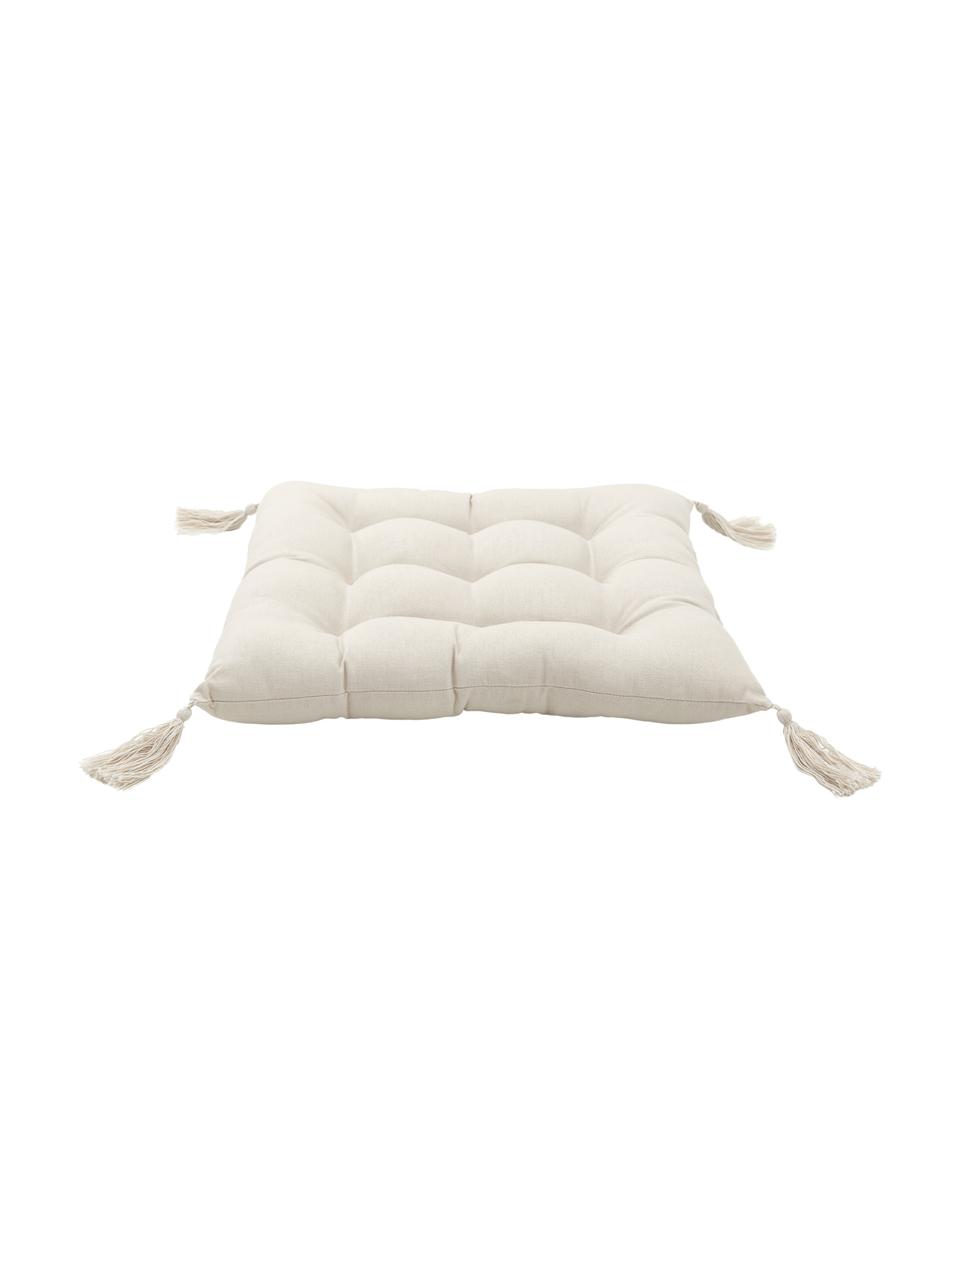 Cuscino sedia in cotone beige con nappe Ava, Rivestimento: 100% cotone, Beige, Larg. 40 x Lung. 40 cm